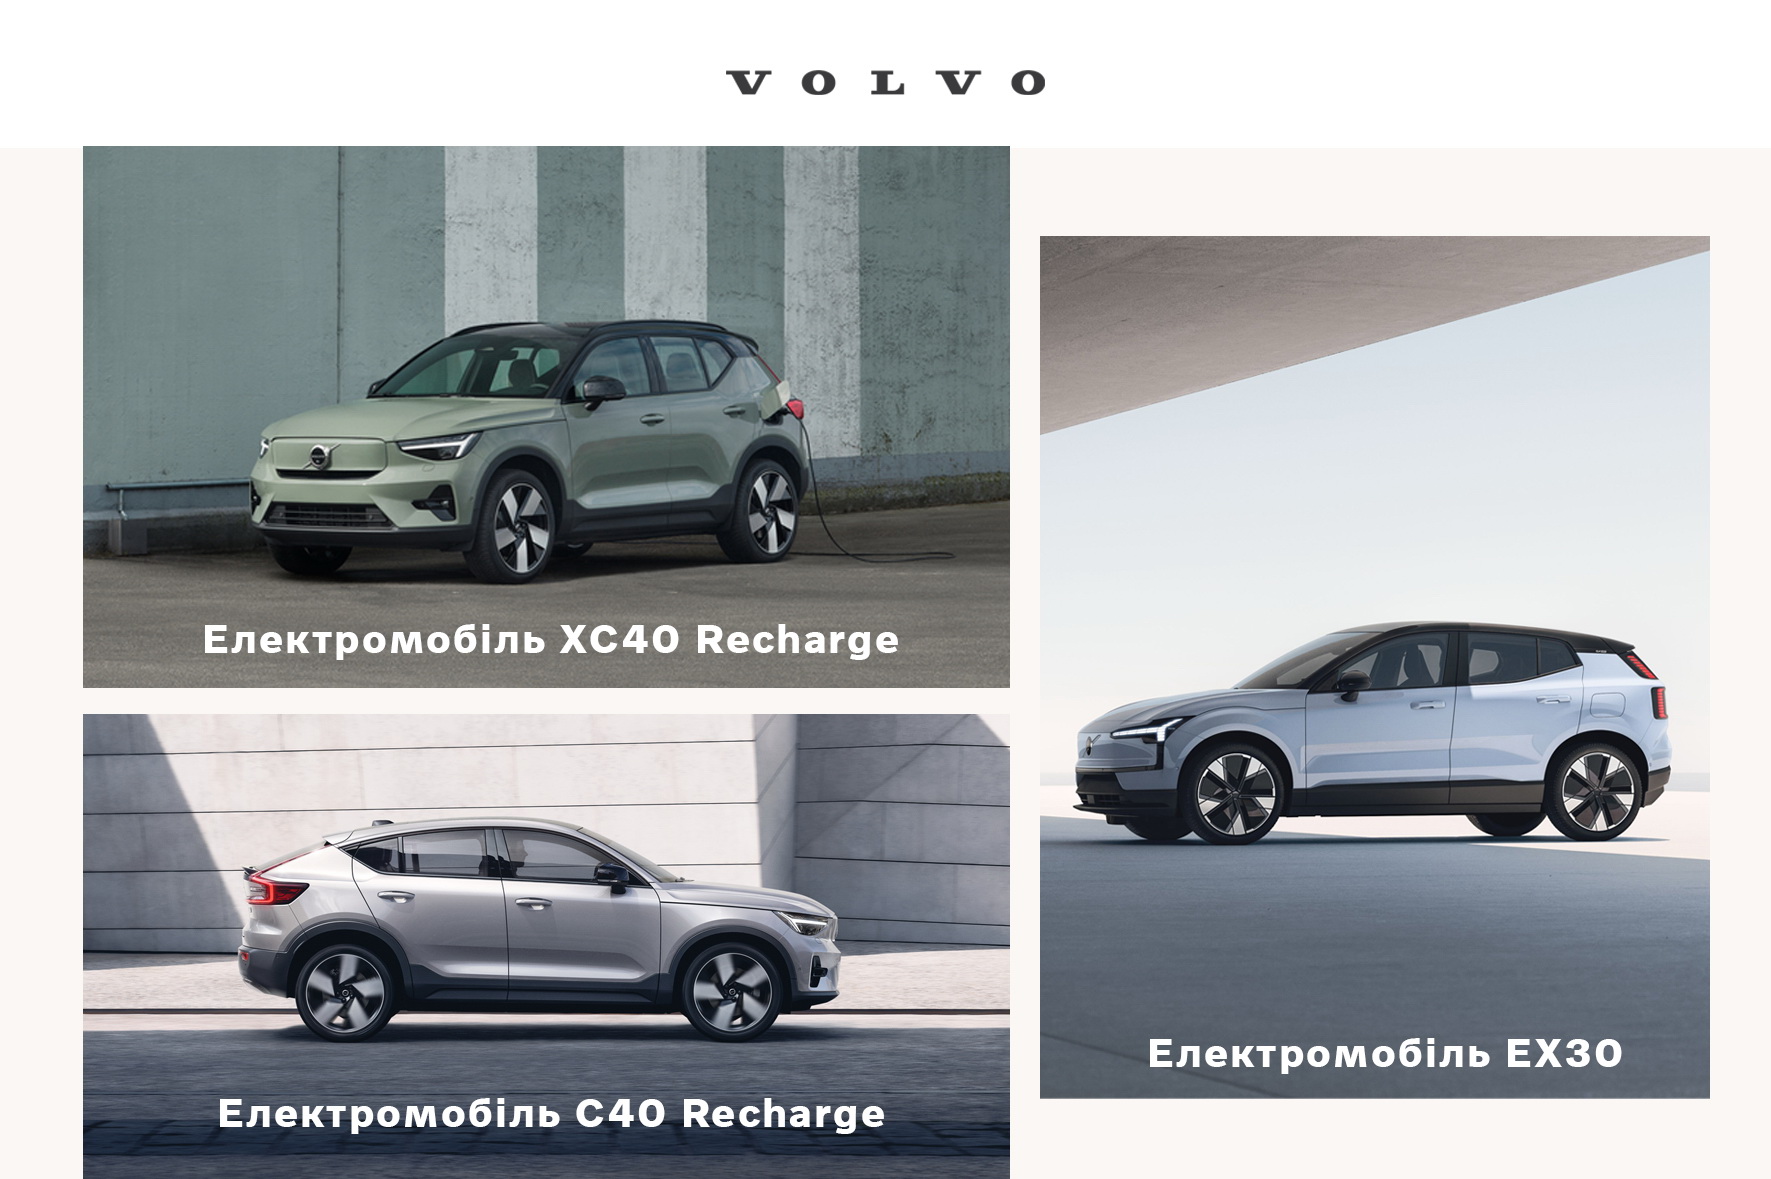 Volvo один з перших в Україні з ексклюзивною програмою сервісу для електромобілів: обслуговування вже включене у вартість авто